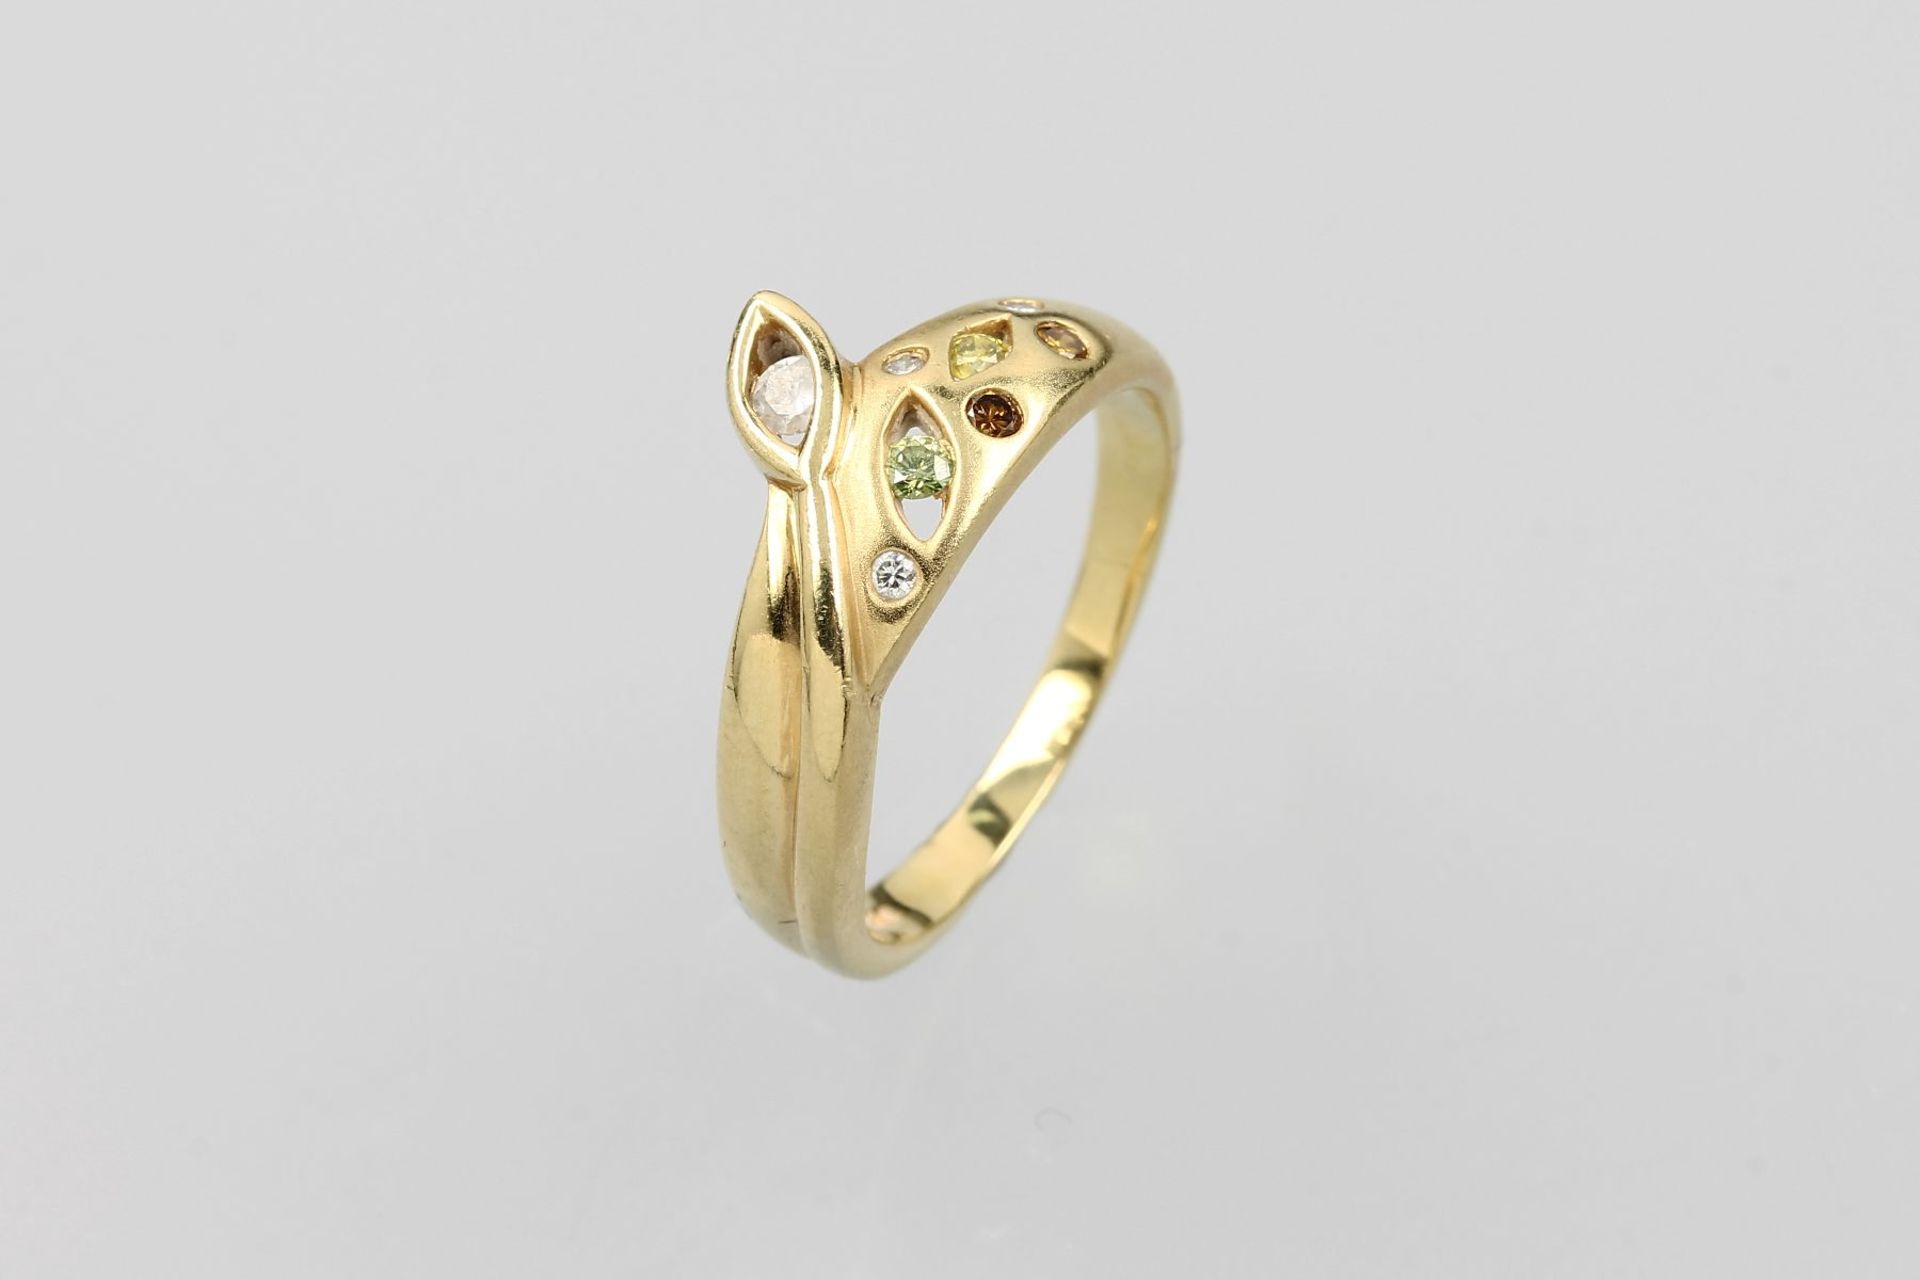 18 kt Gold Ring mit Brillanten, GG 750/000,florale Gestaltung, Brillanten zus. ca. 0.18 ct Weiß,